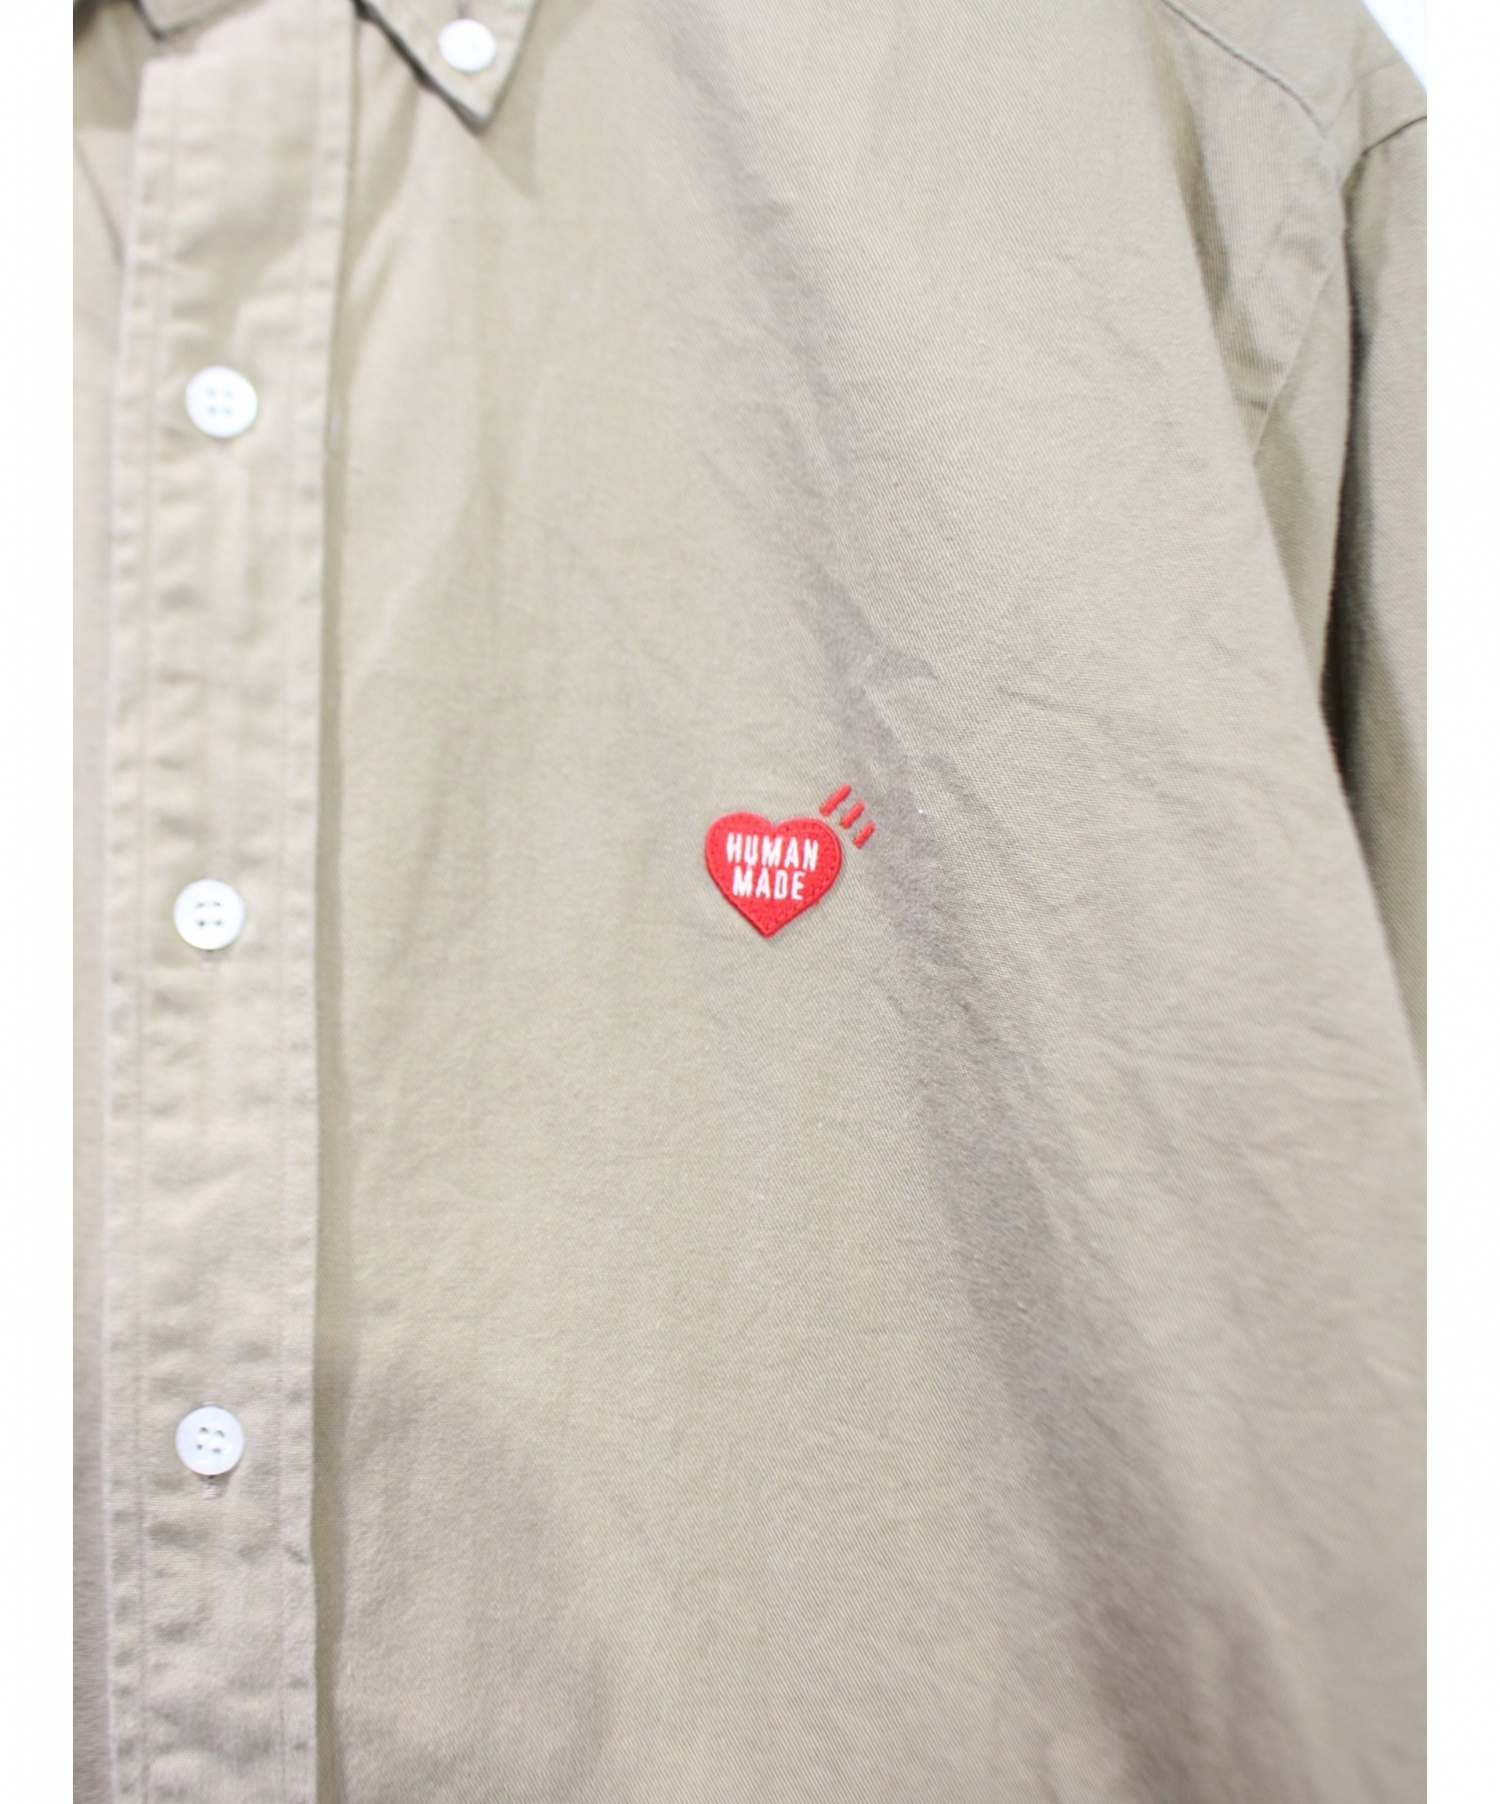 HUMAN MADE (ヒューマンメイド) ハート刺繍BDシャツ ベージュ サイズ:XL